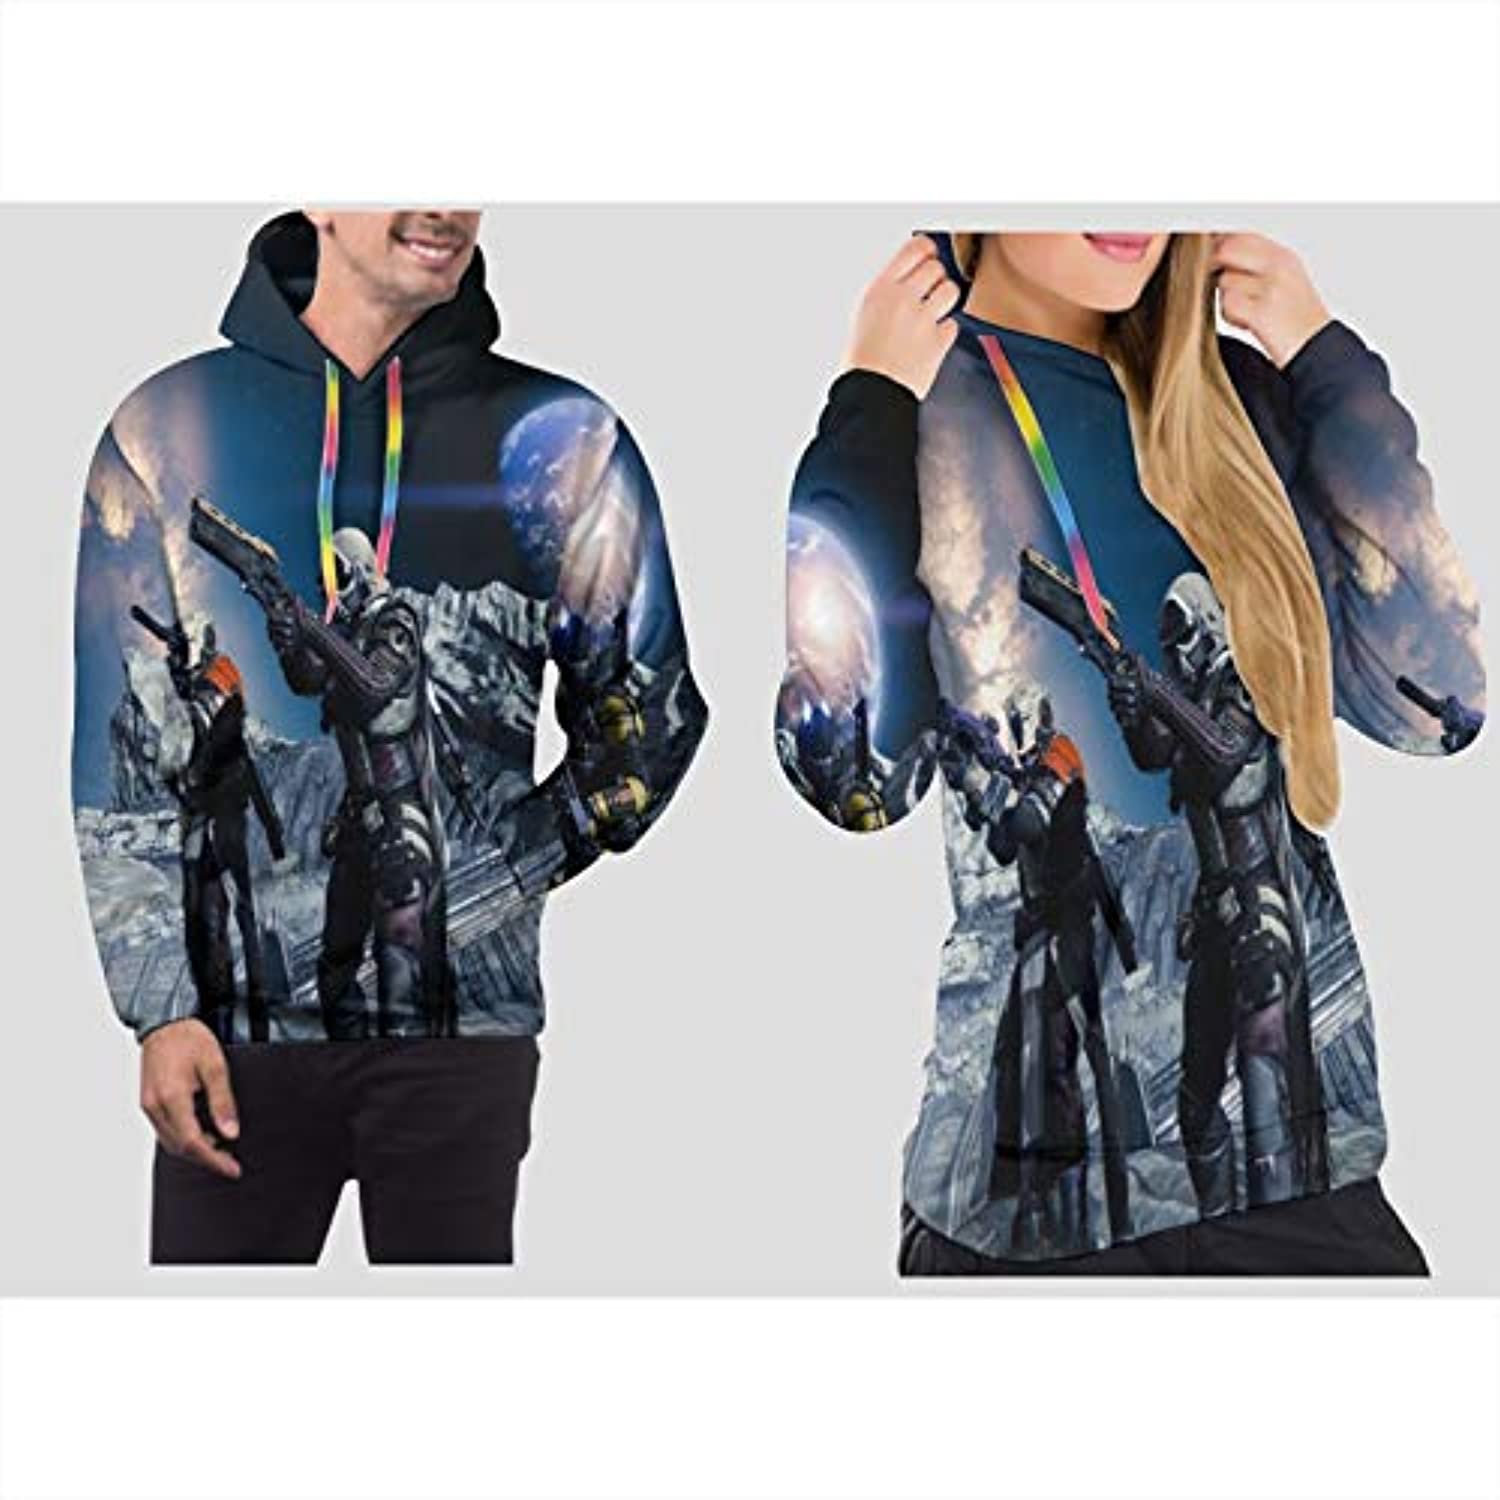 Destiny 2 3D Hoodies Cosplay Hunter Warlock Titan Sweatshirt Jacket Coat Costume